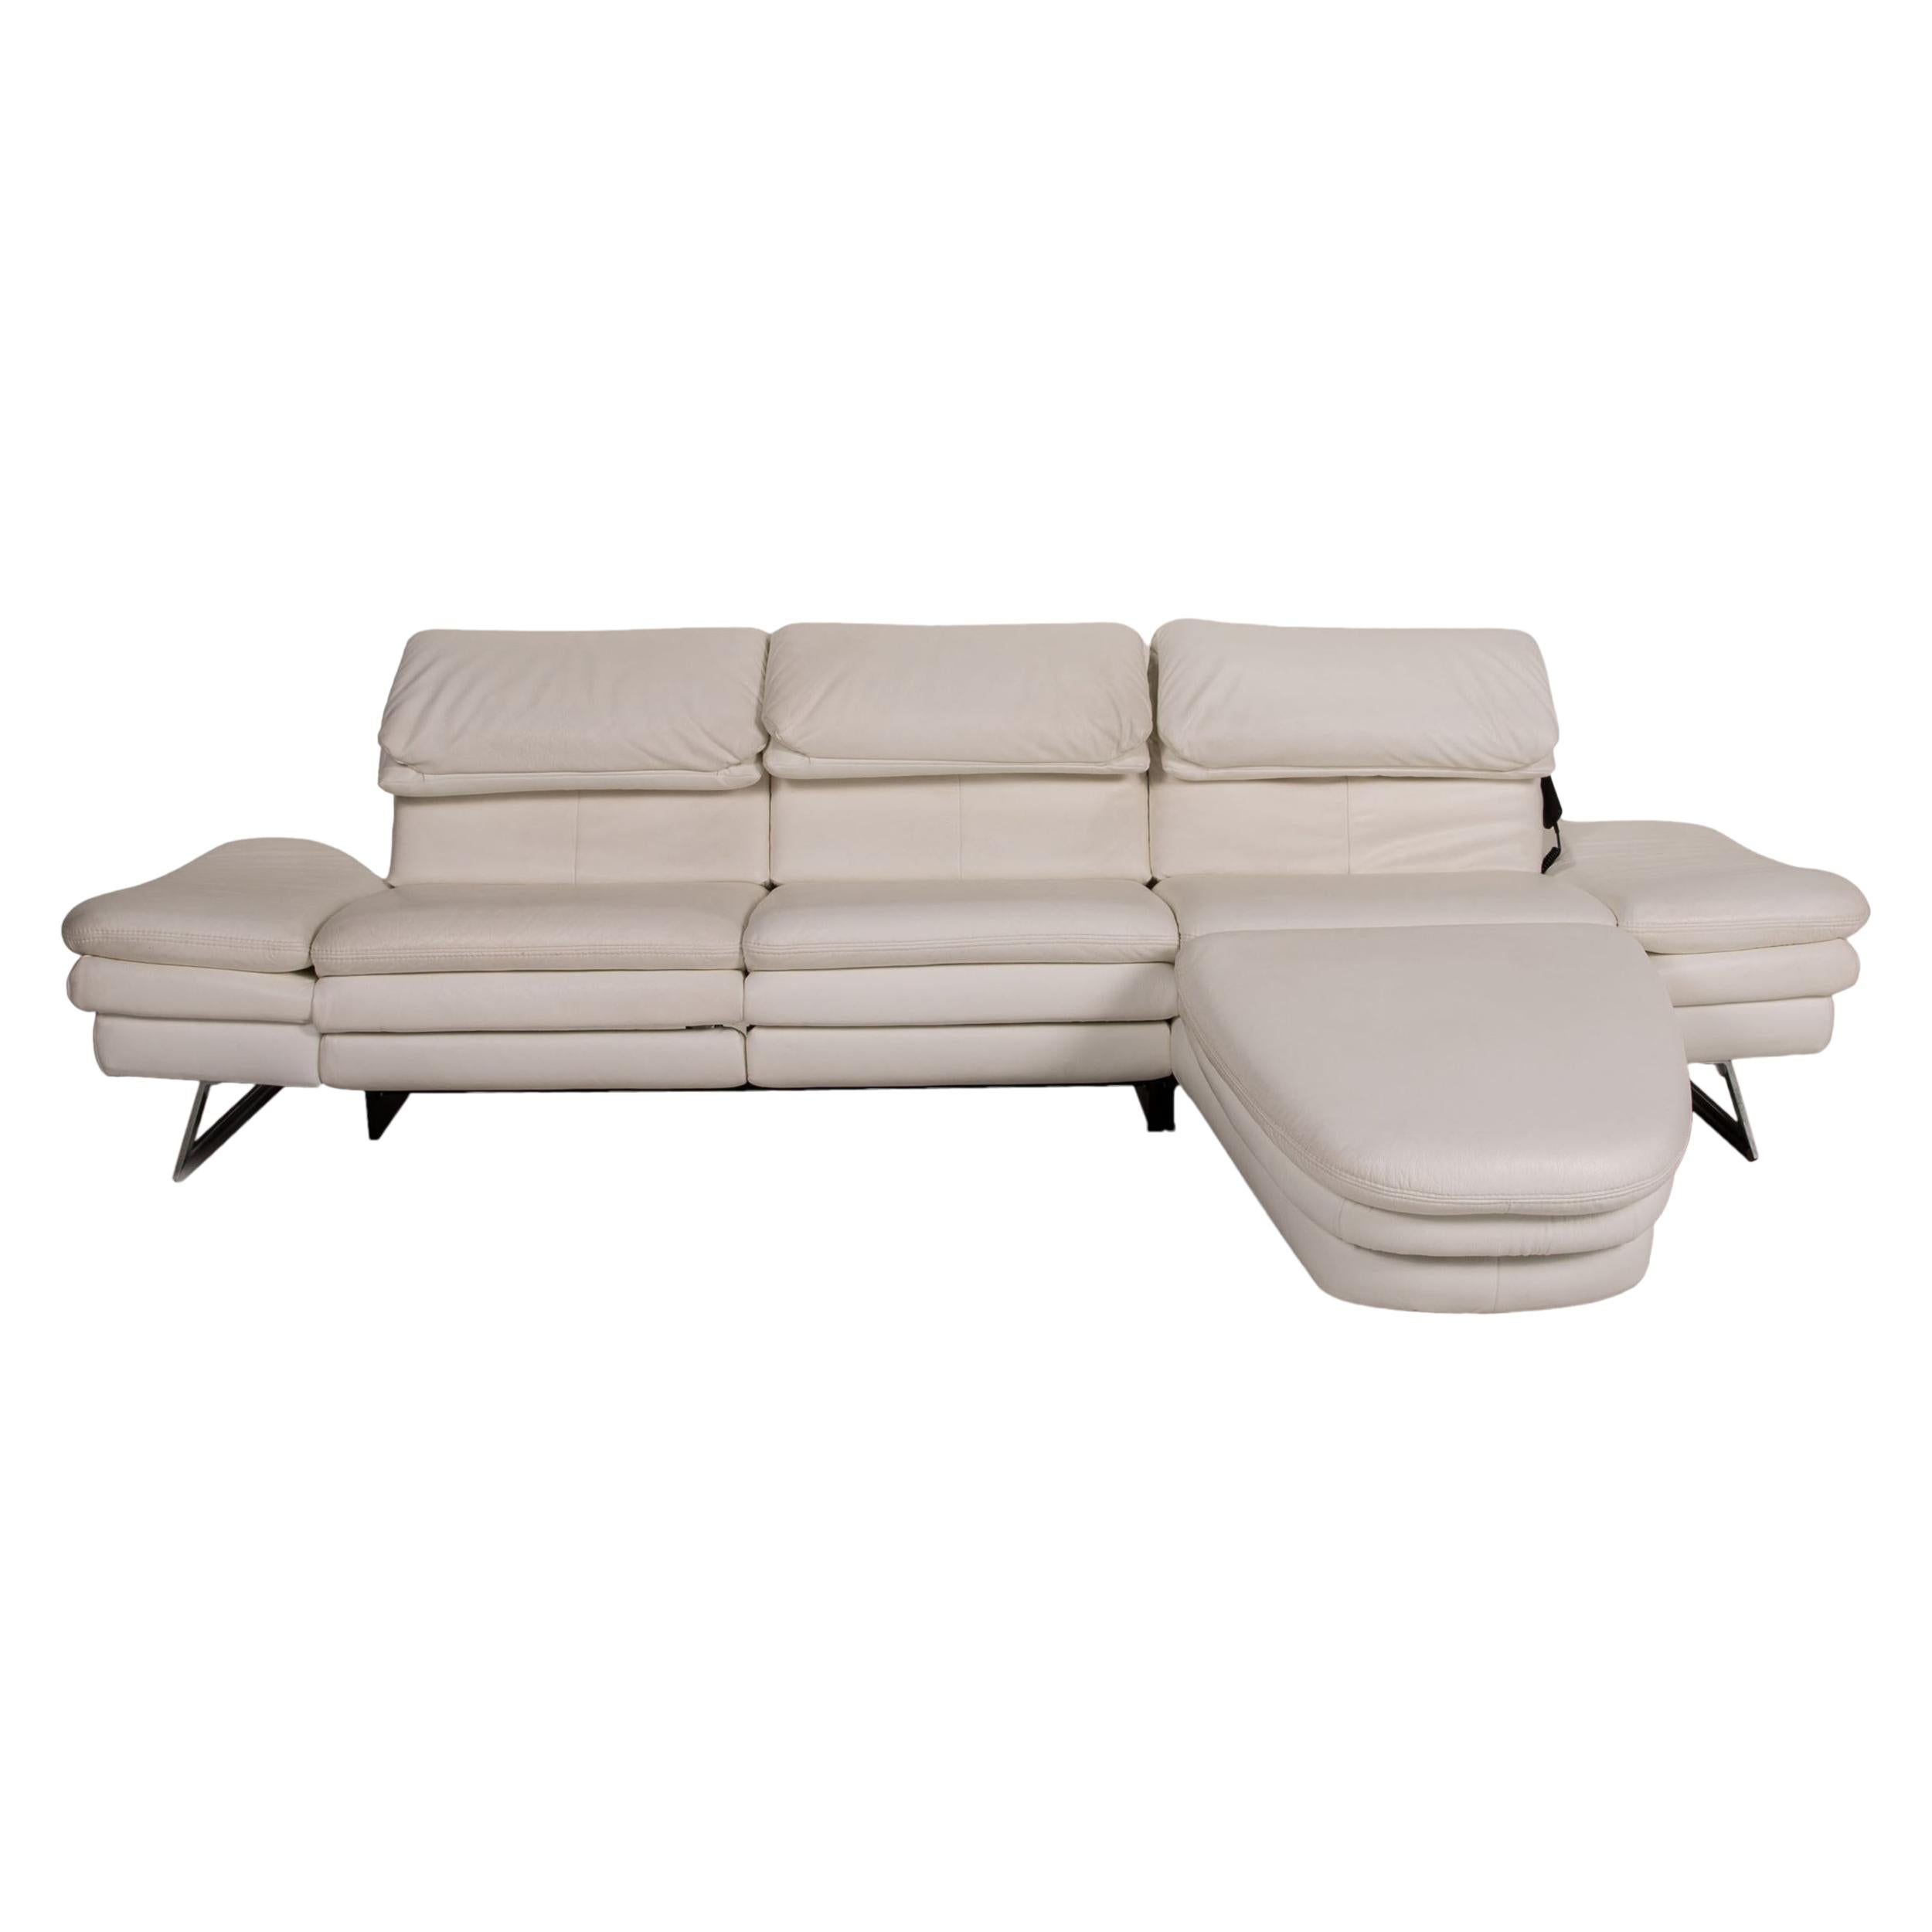 Oelsa San Diego 3850 Leather Sofa White, San Diego Leather Furniture